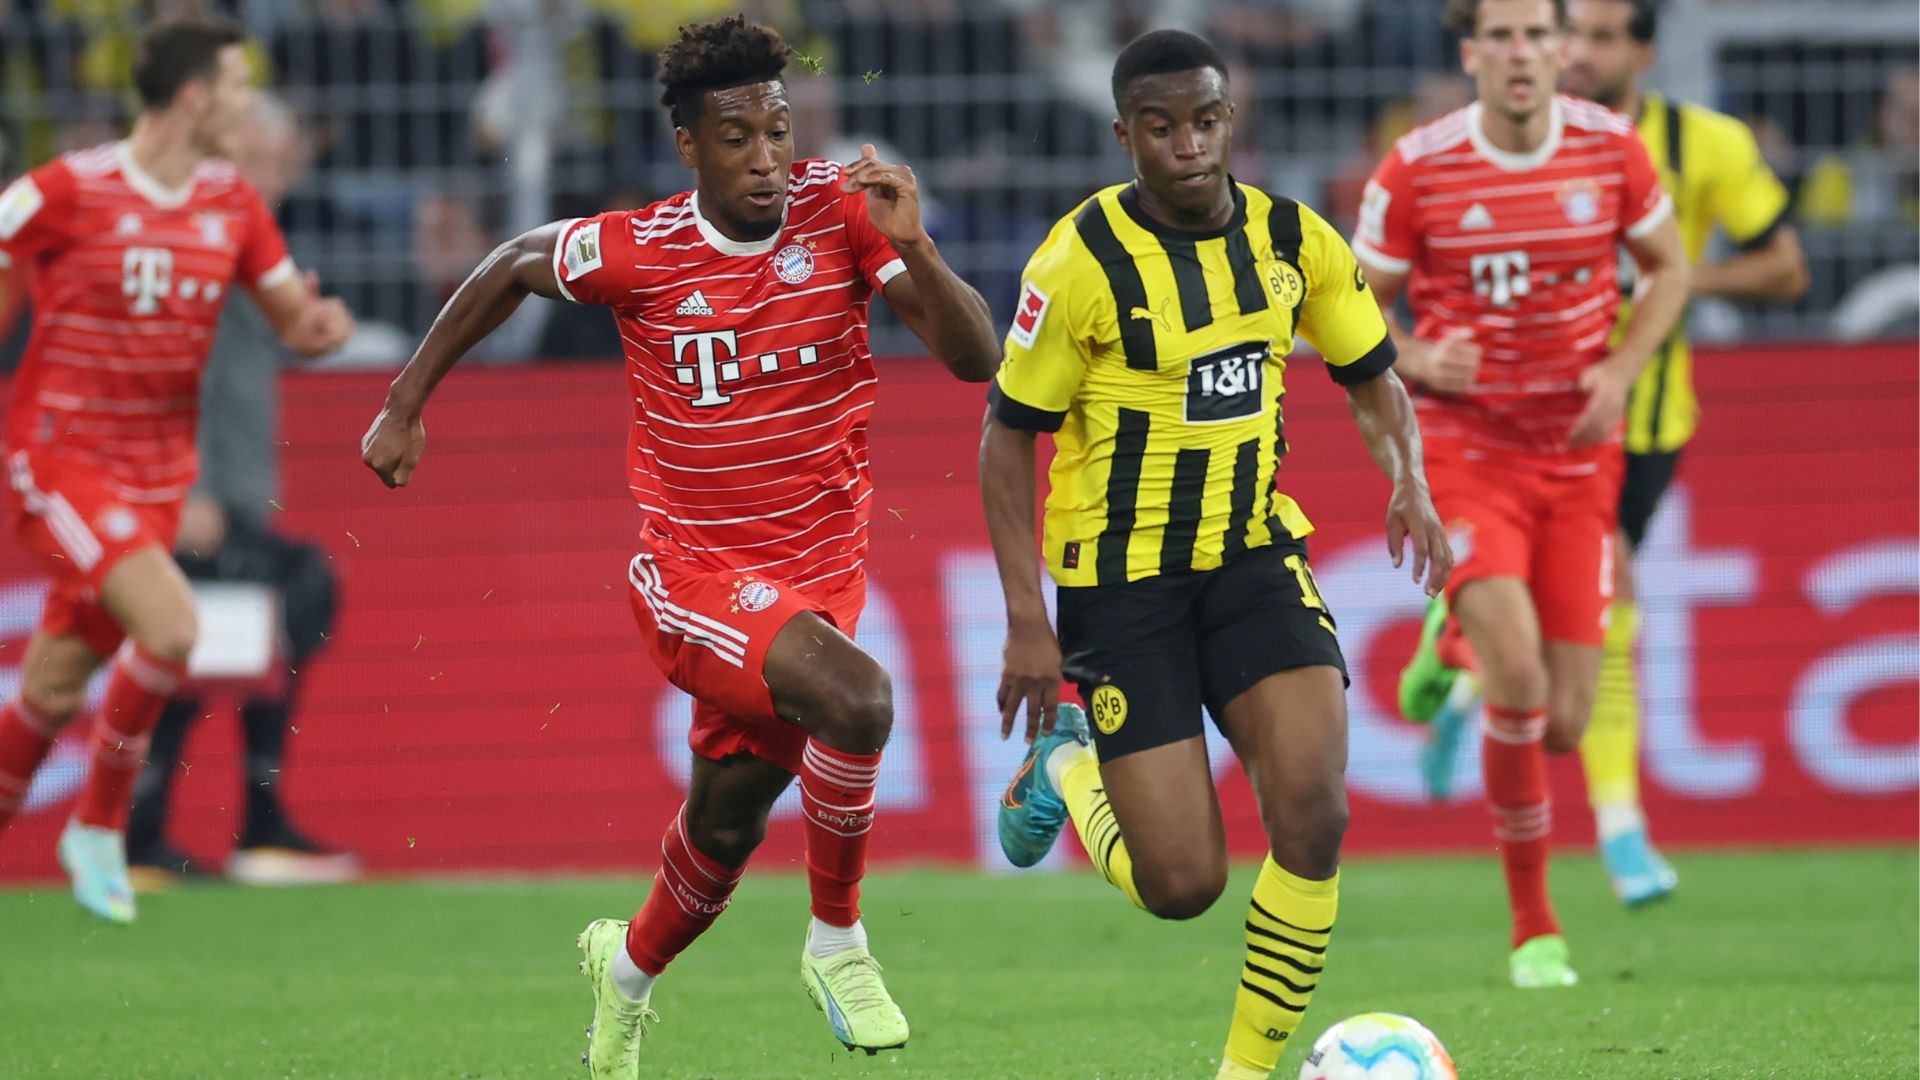 O confronto entre Bayern de Munique e Borussia Dortmund do primeiro turno terminou empatado em 2 a 2 (Crédito: Getty Images)